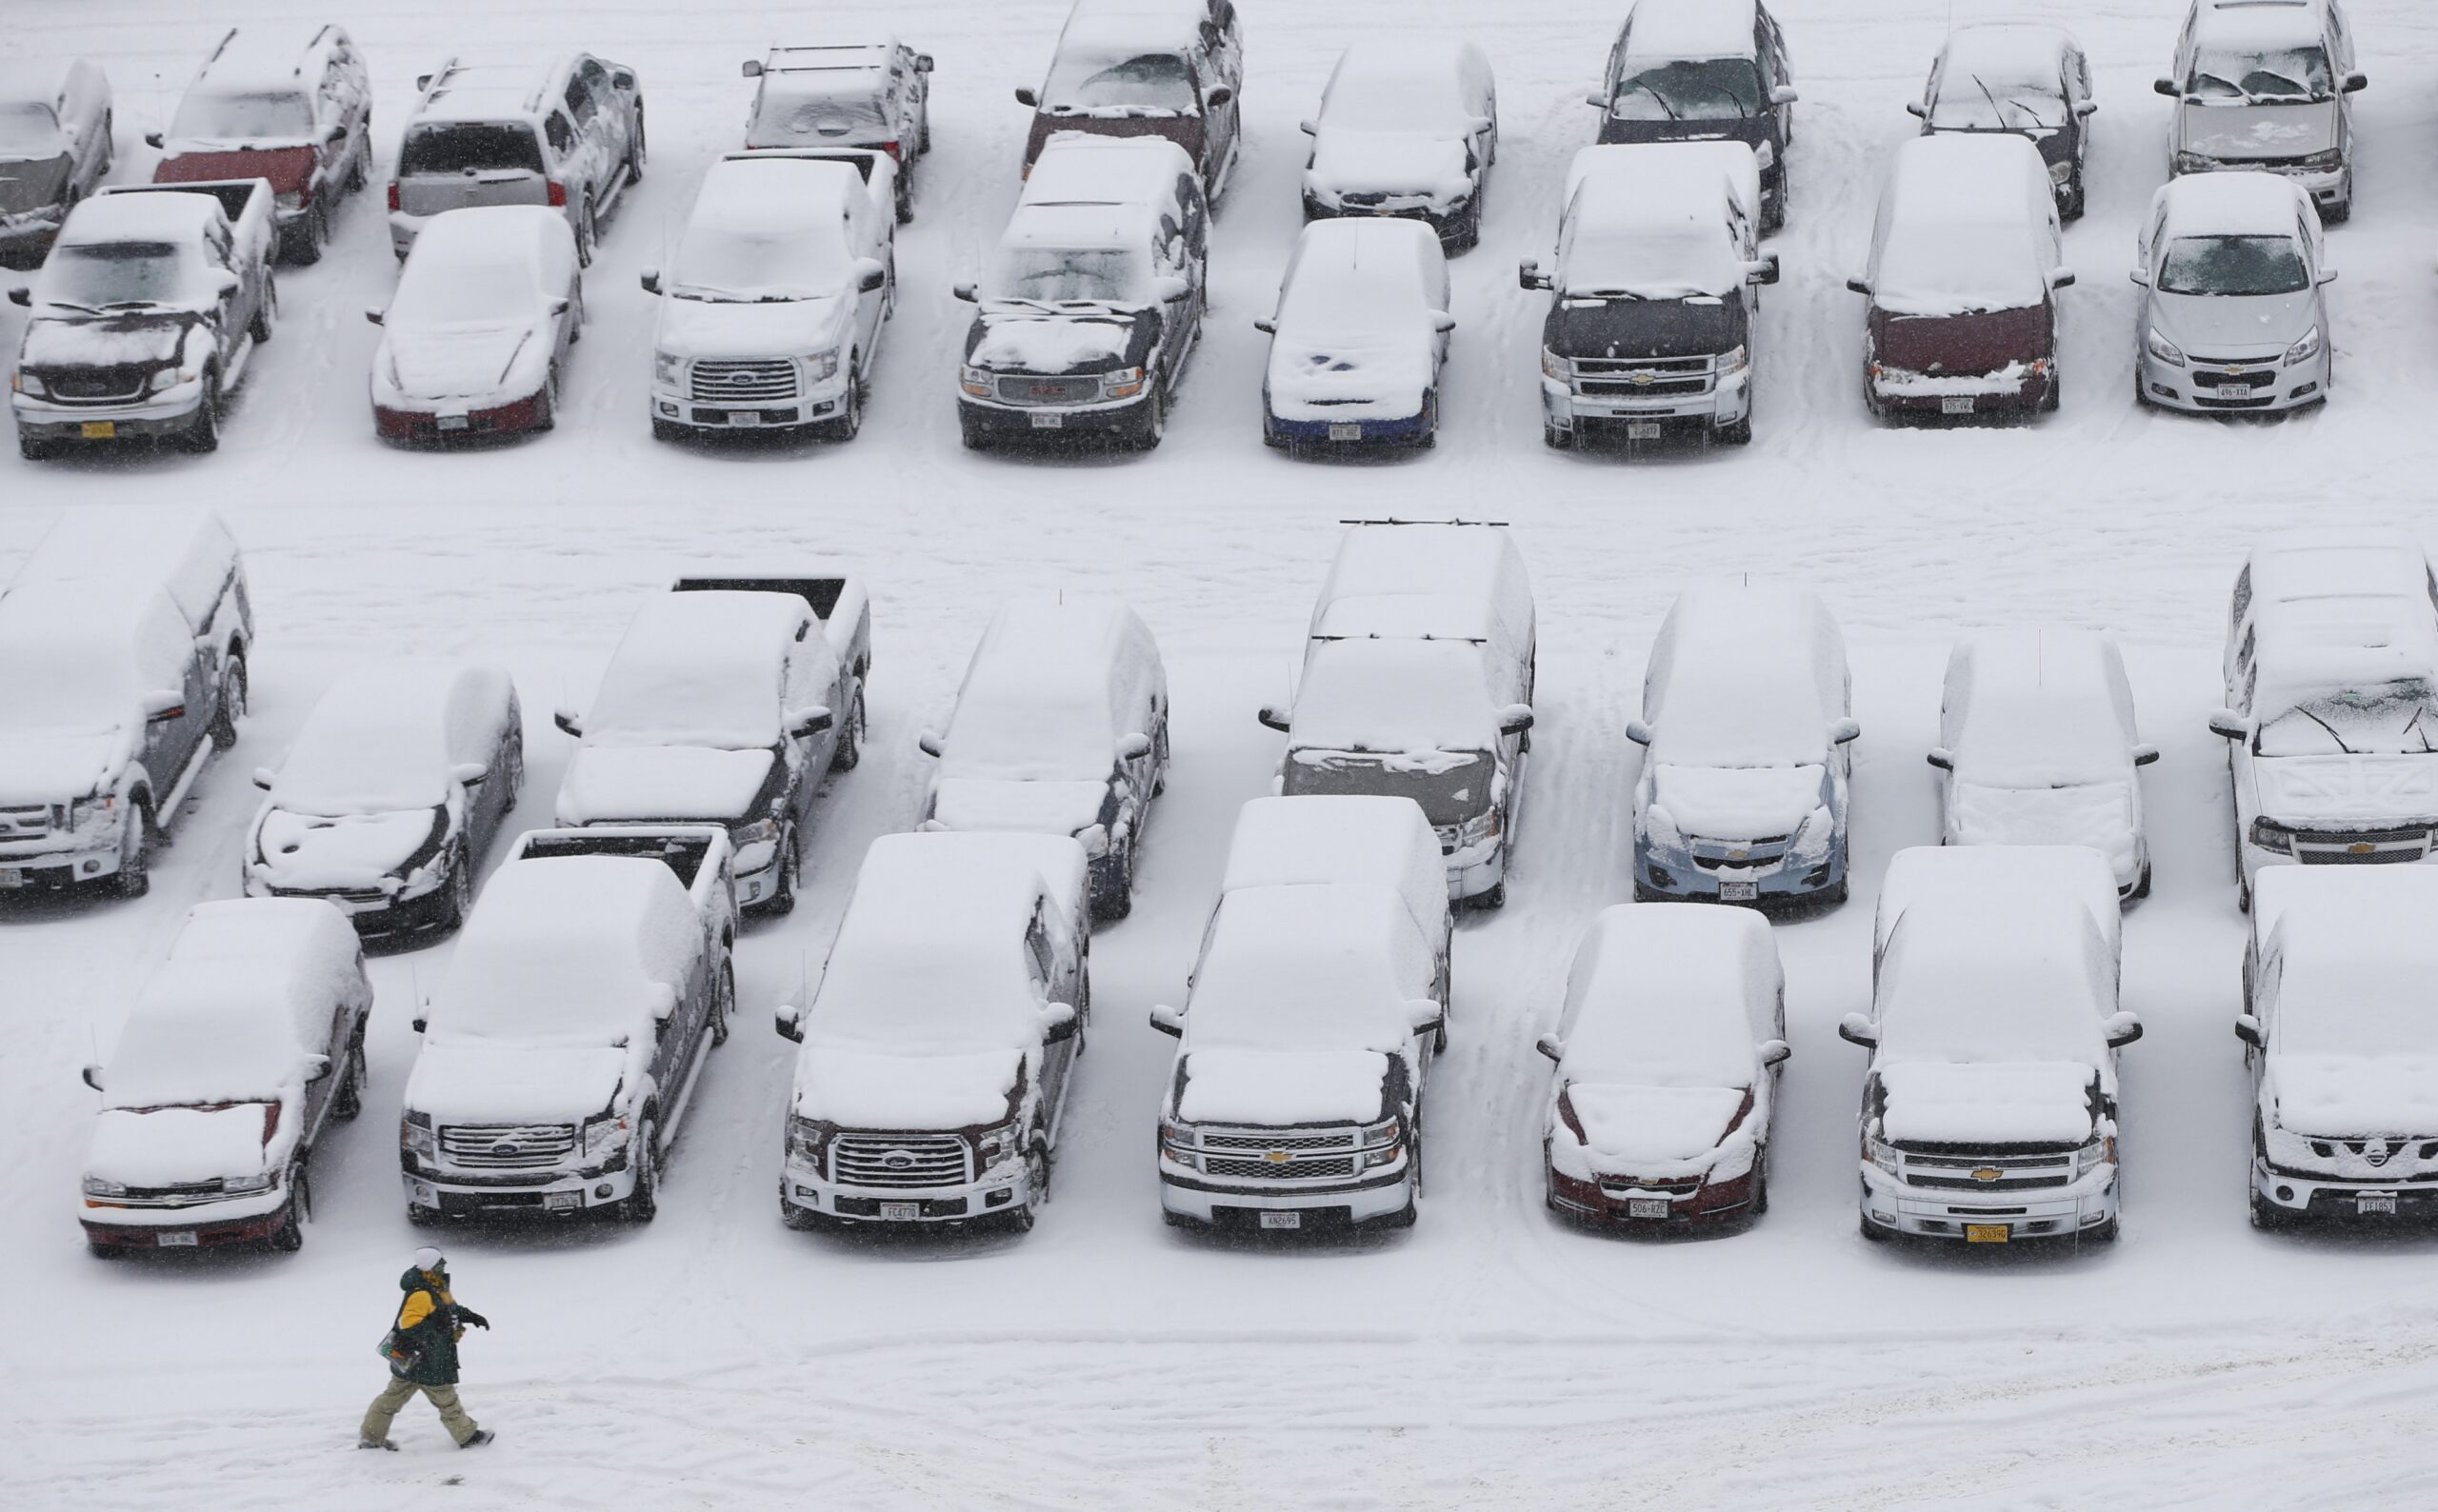 Snowy Lambeau Field parking lot